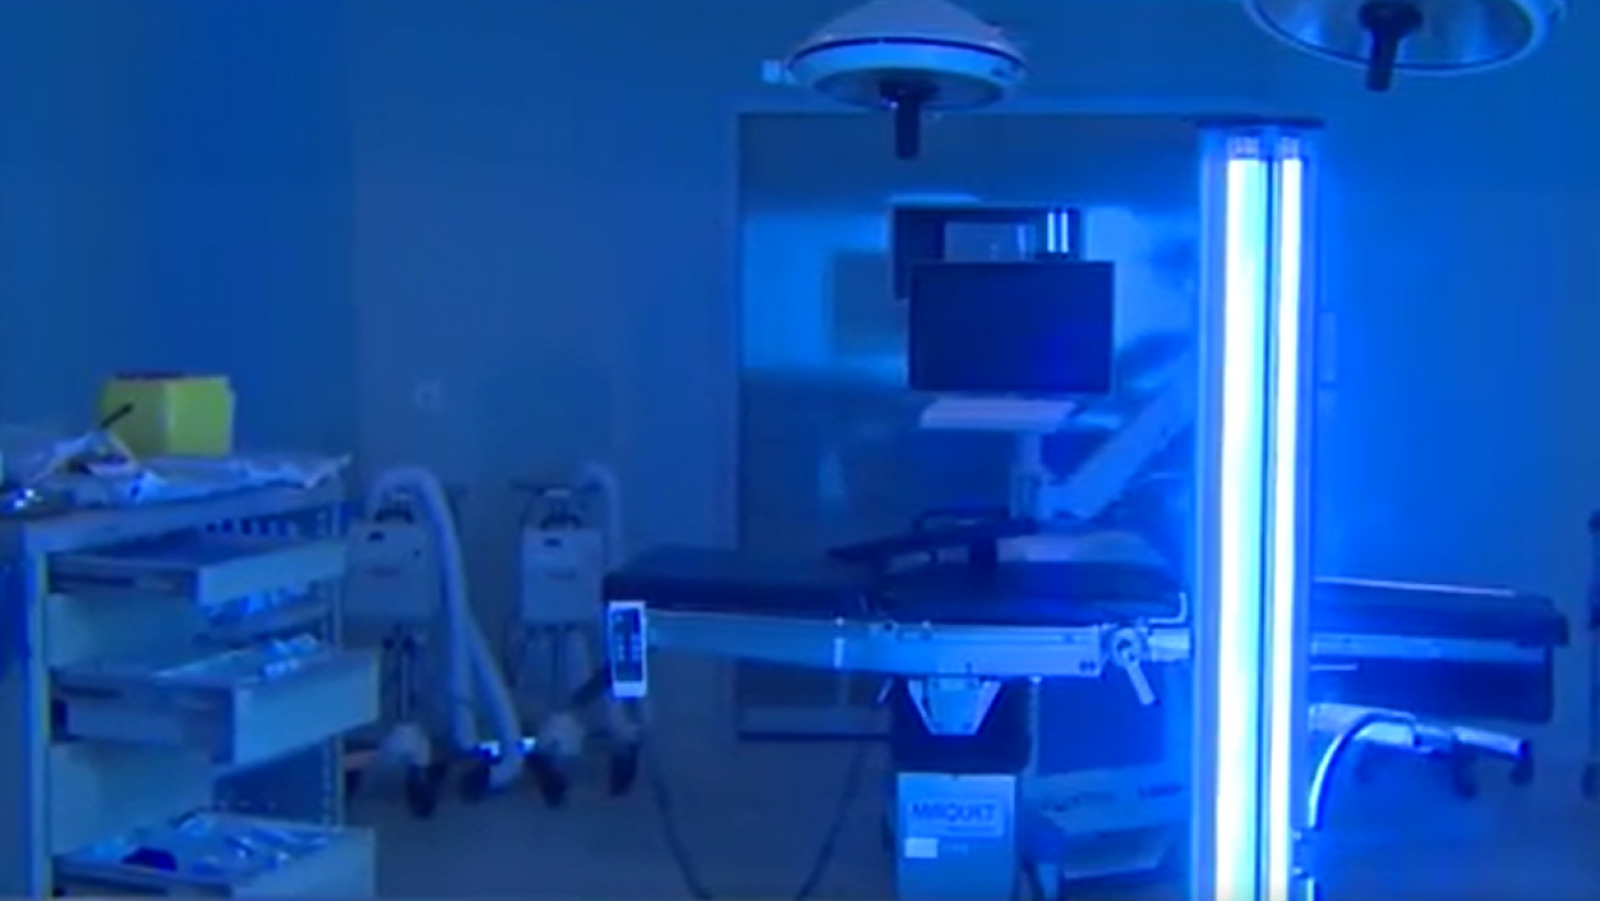 El Hospital de Fuenlabrada utiliza rayos ultravioletas para desinfectar las salas expuestas al coronavirus